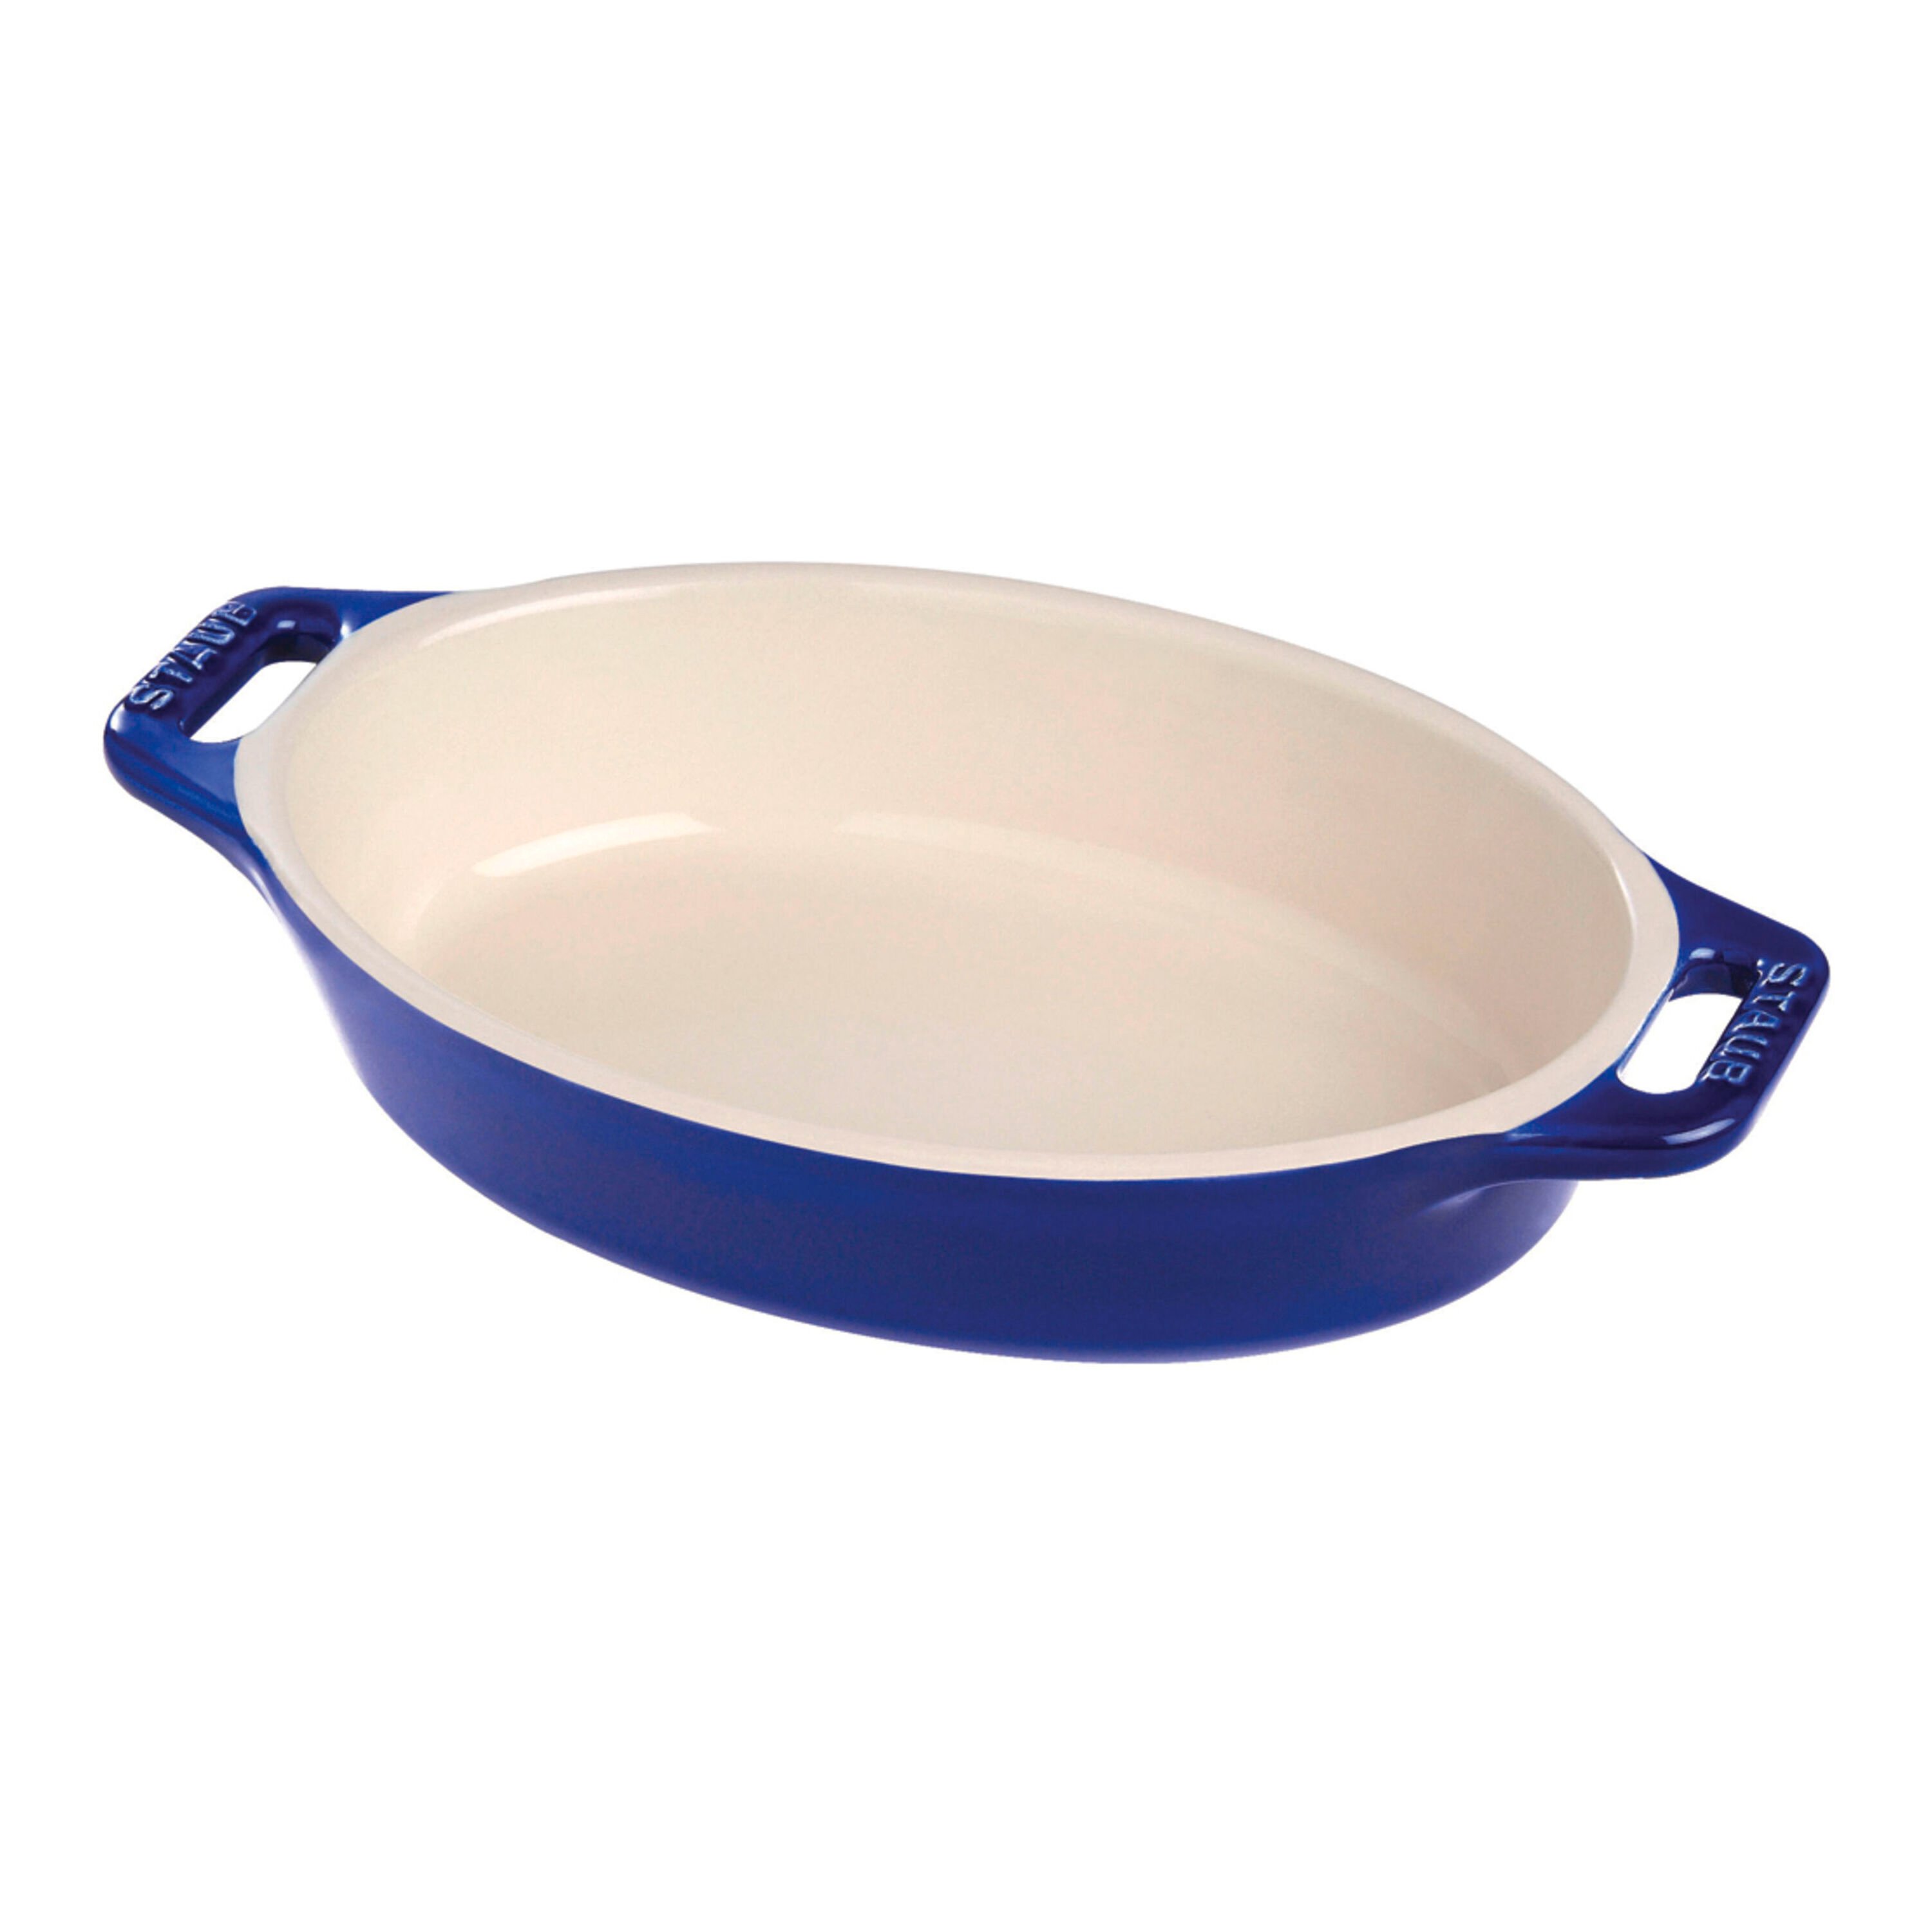 Staub Oval Baking Dish - Dark Blue - 9 in